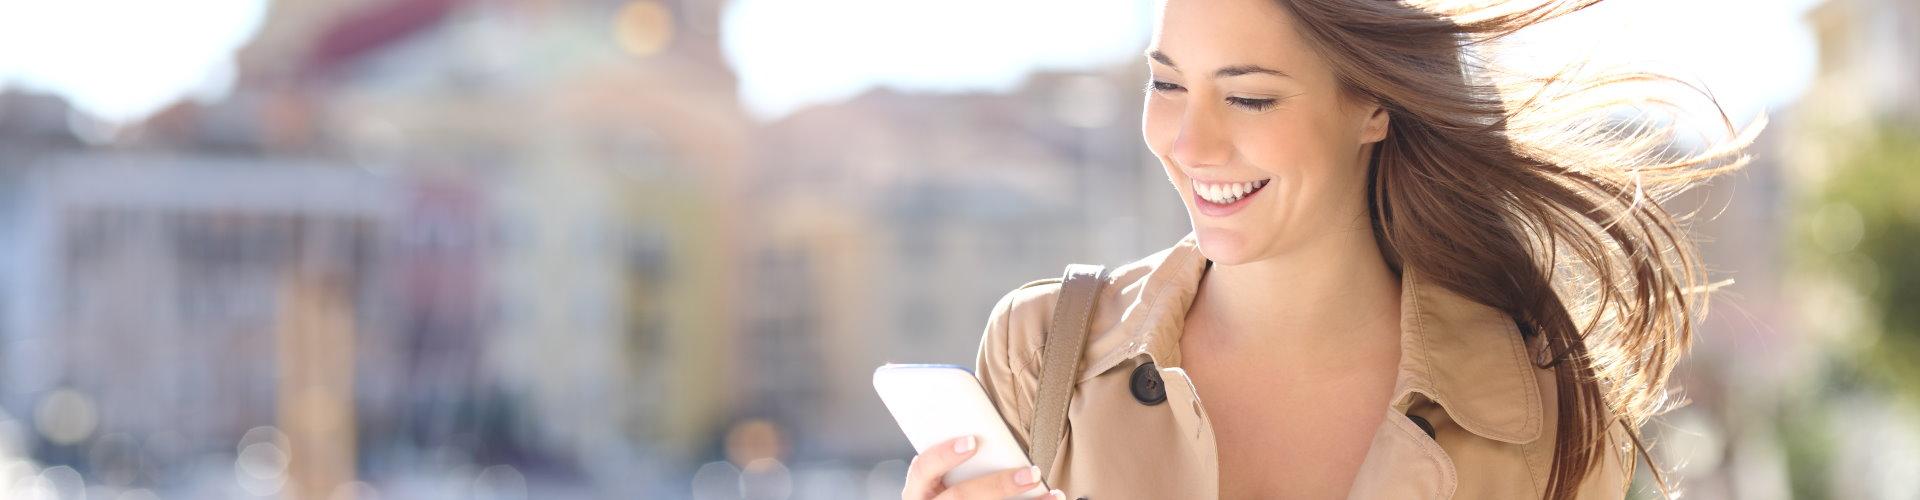 Mujer joven sonriendo mirando al móvil en la calle